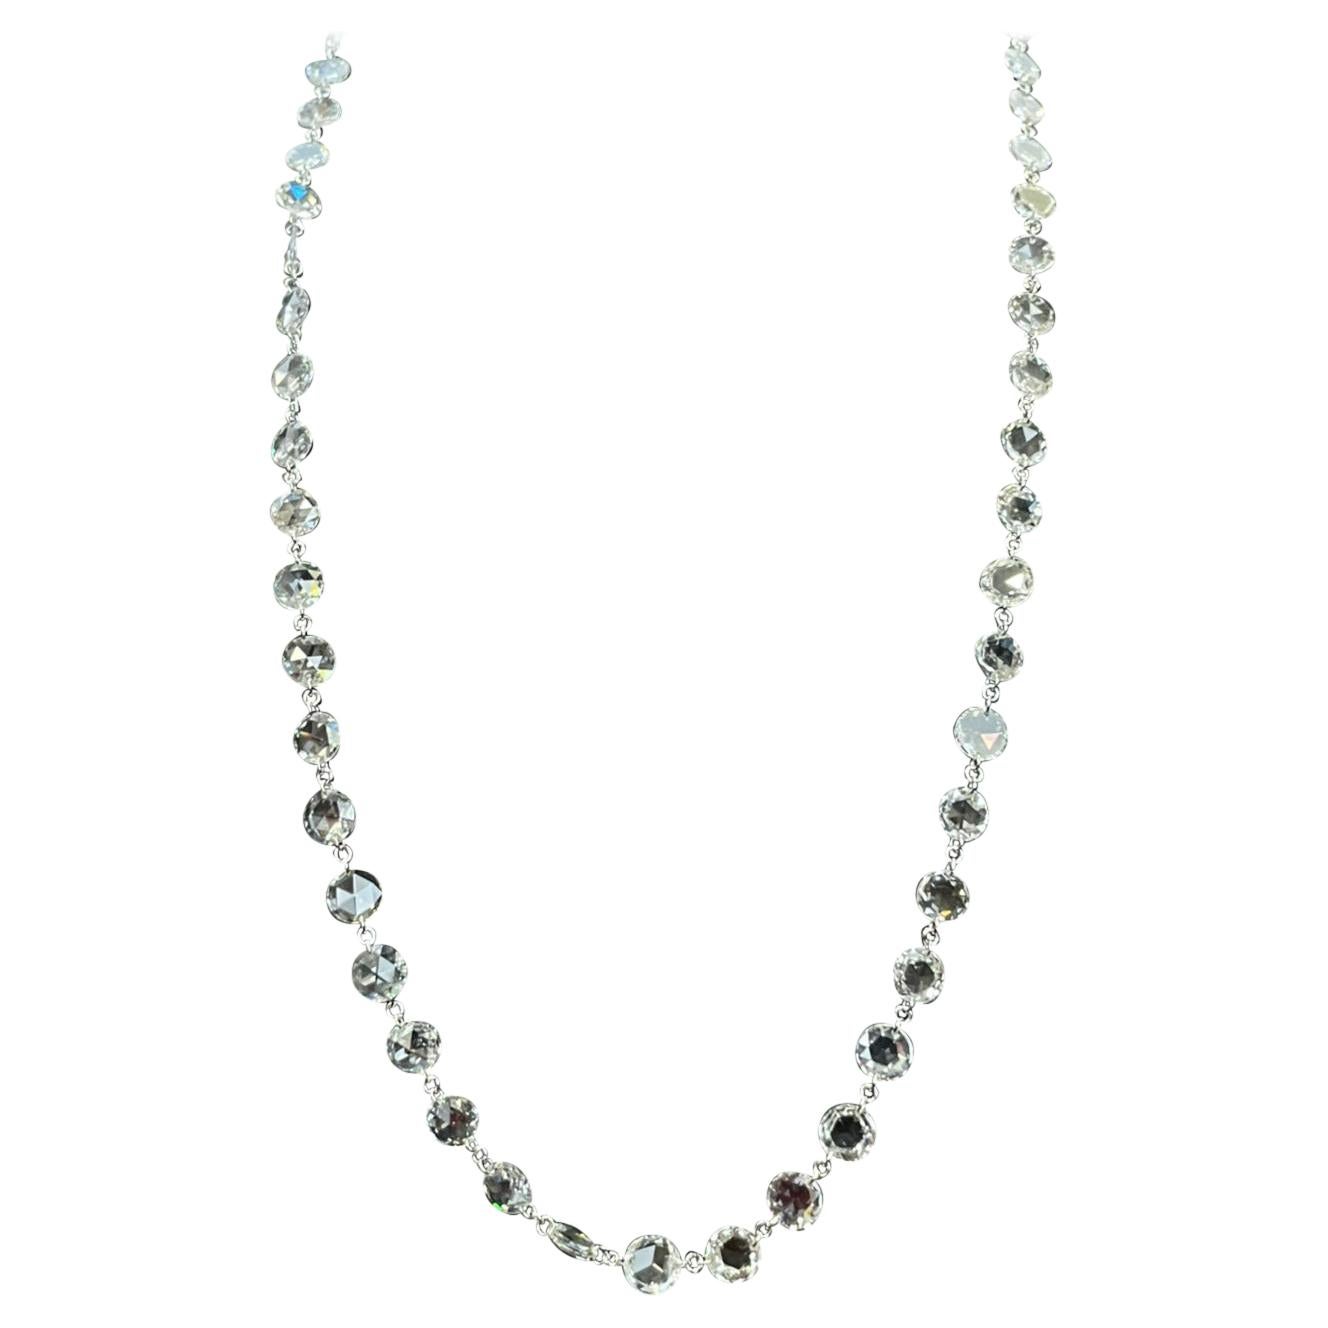 PANIM 10.95cts Rosecut Diamond Necklace in 18 Karat White Gold